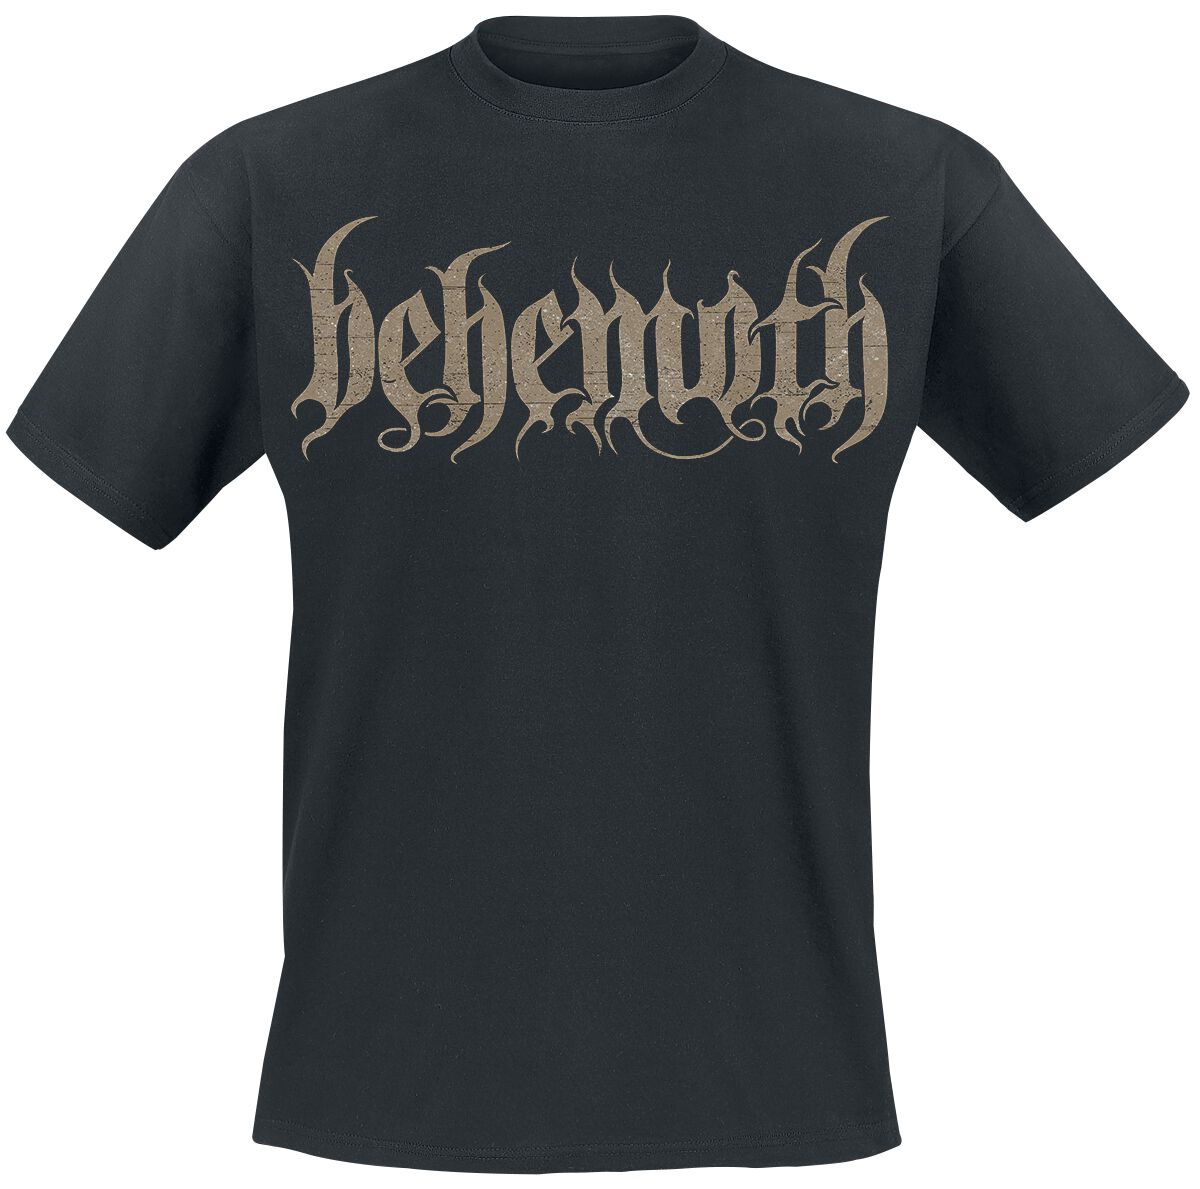 Behemoth T-Shirt - Opvs contra natvram - S bis XXL - für Männer - Größe S - schwarz  - EMP exklusives Merchandise!